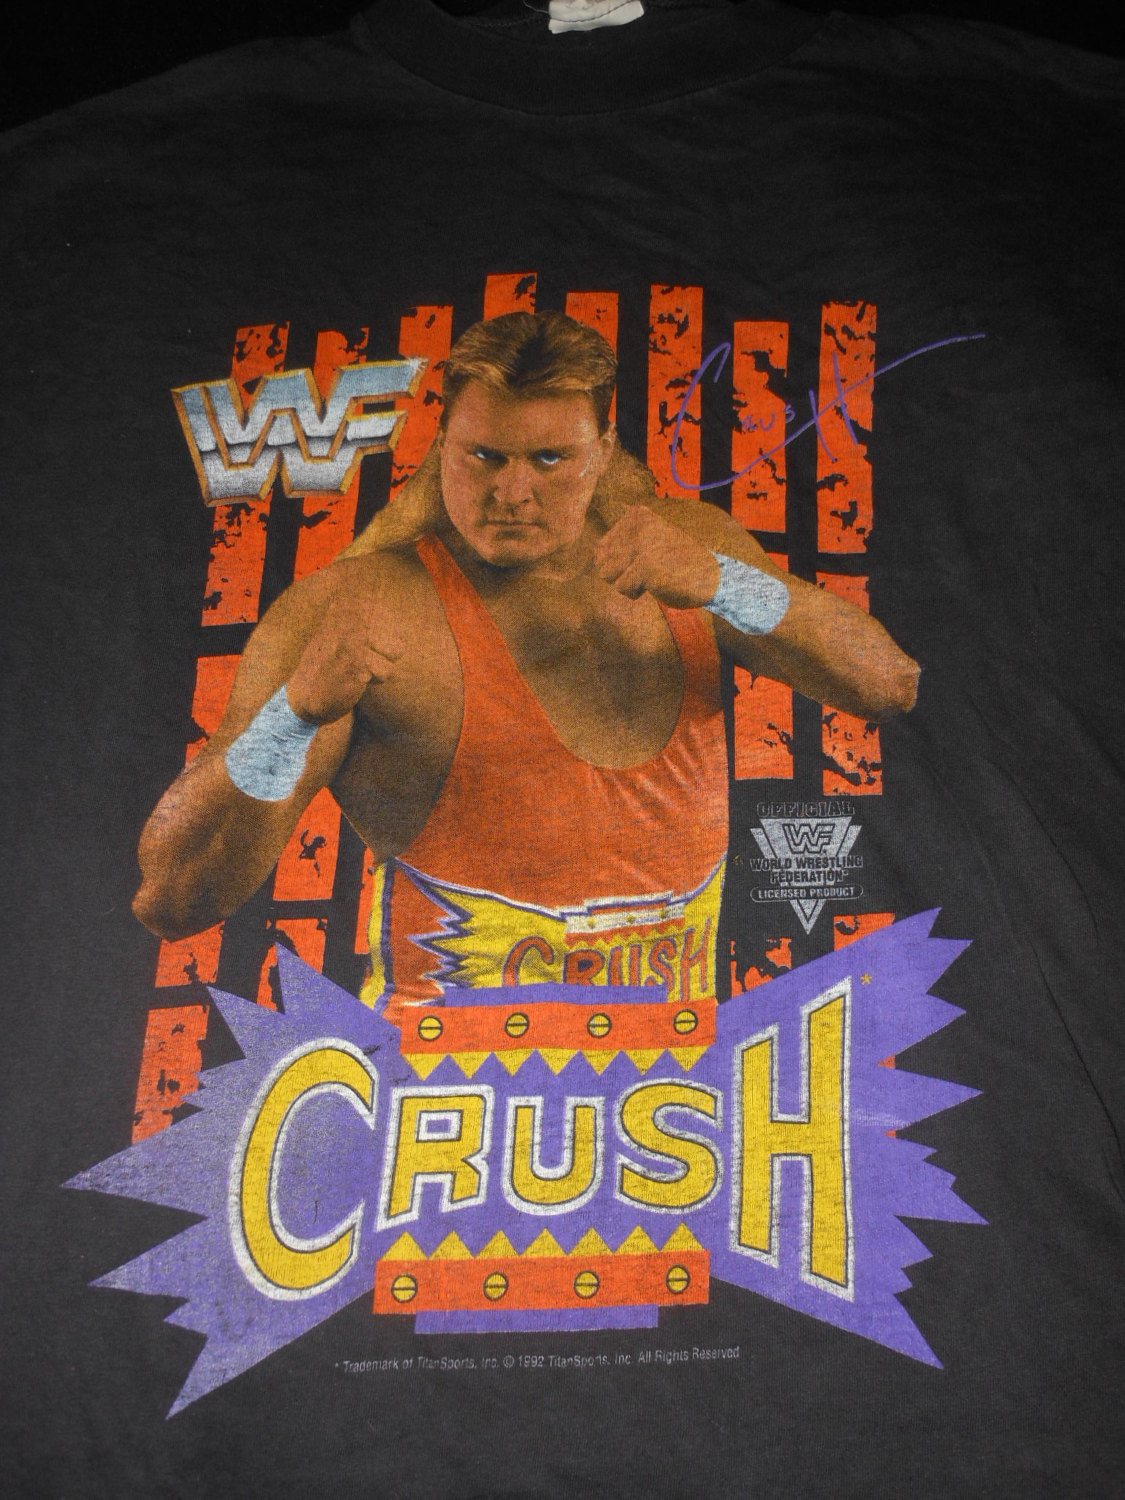 WWF Crush shirt